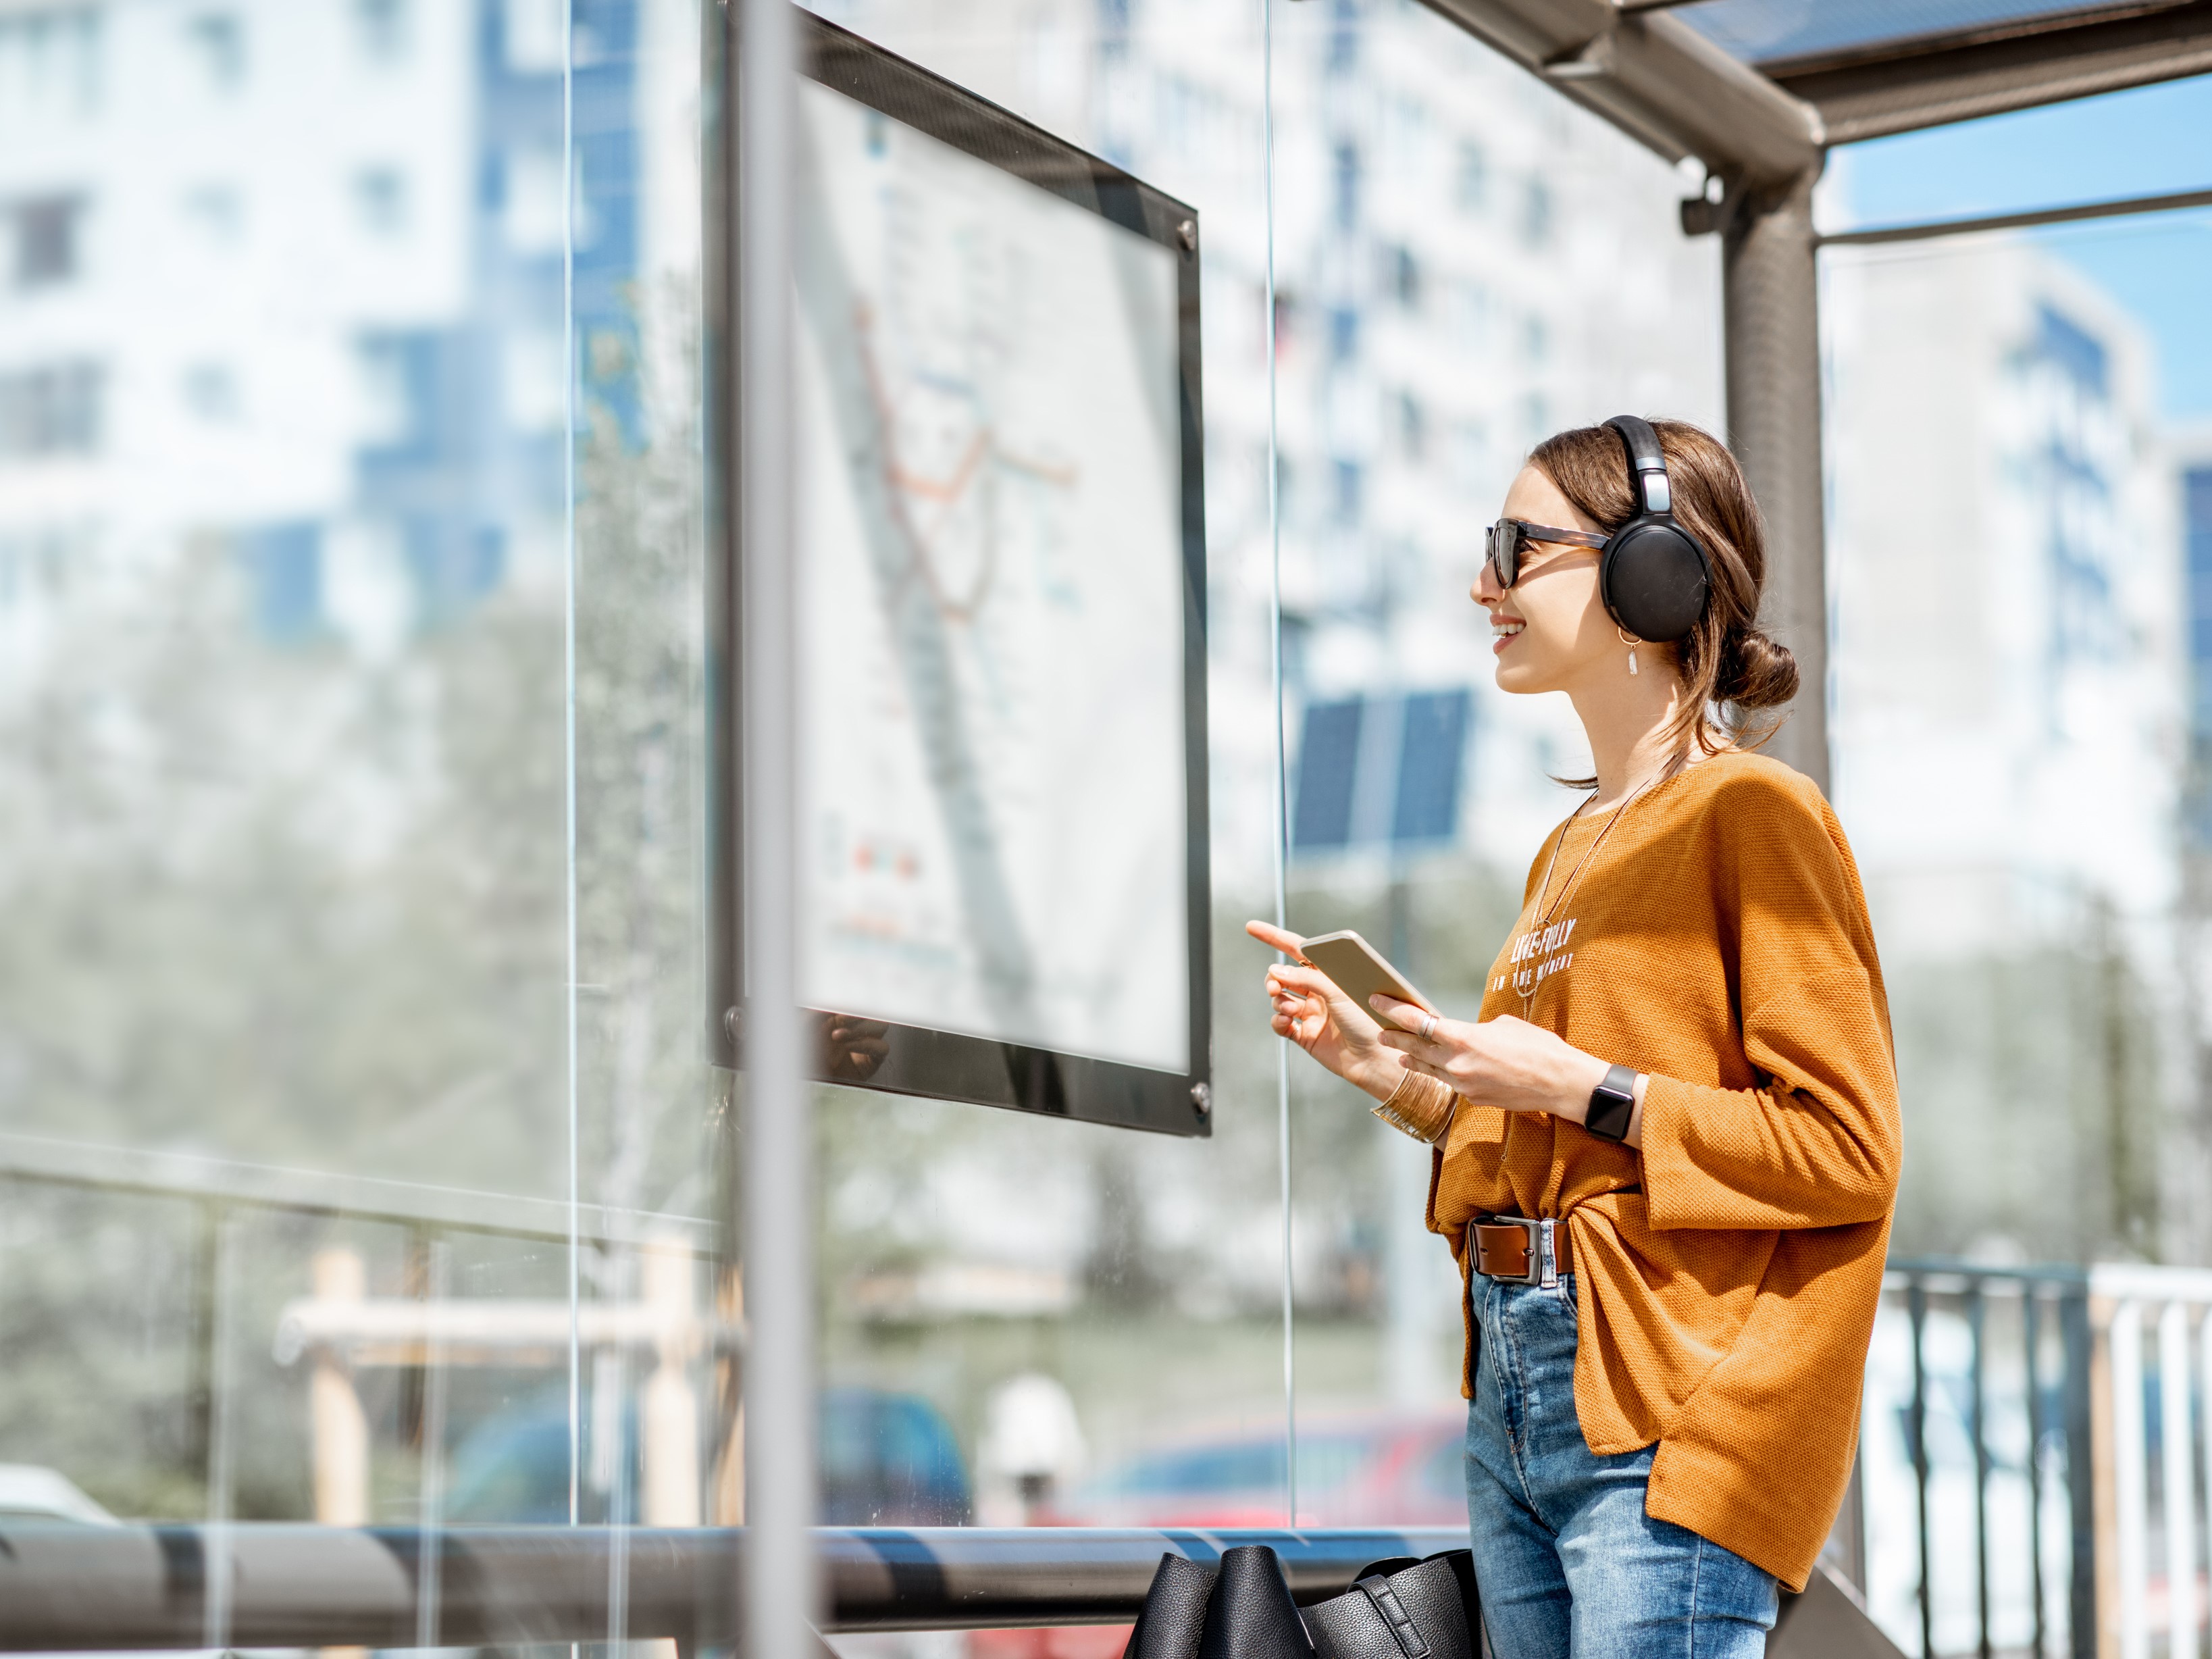 Een lachende jonge vrouw met zonnebril op staat te kijken naar een vertrekstaat in een bushalte.